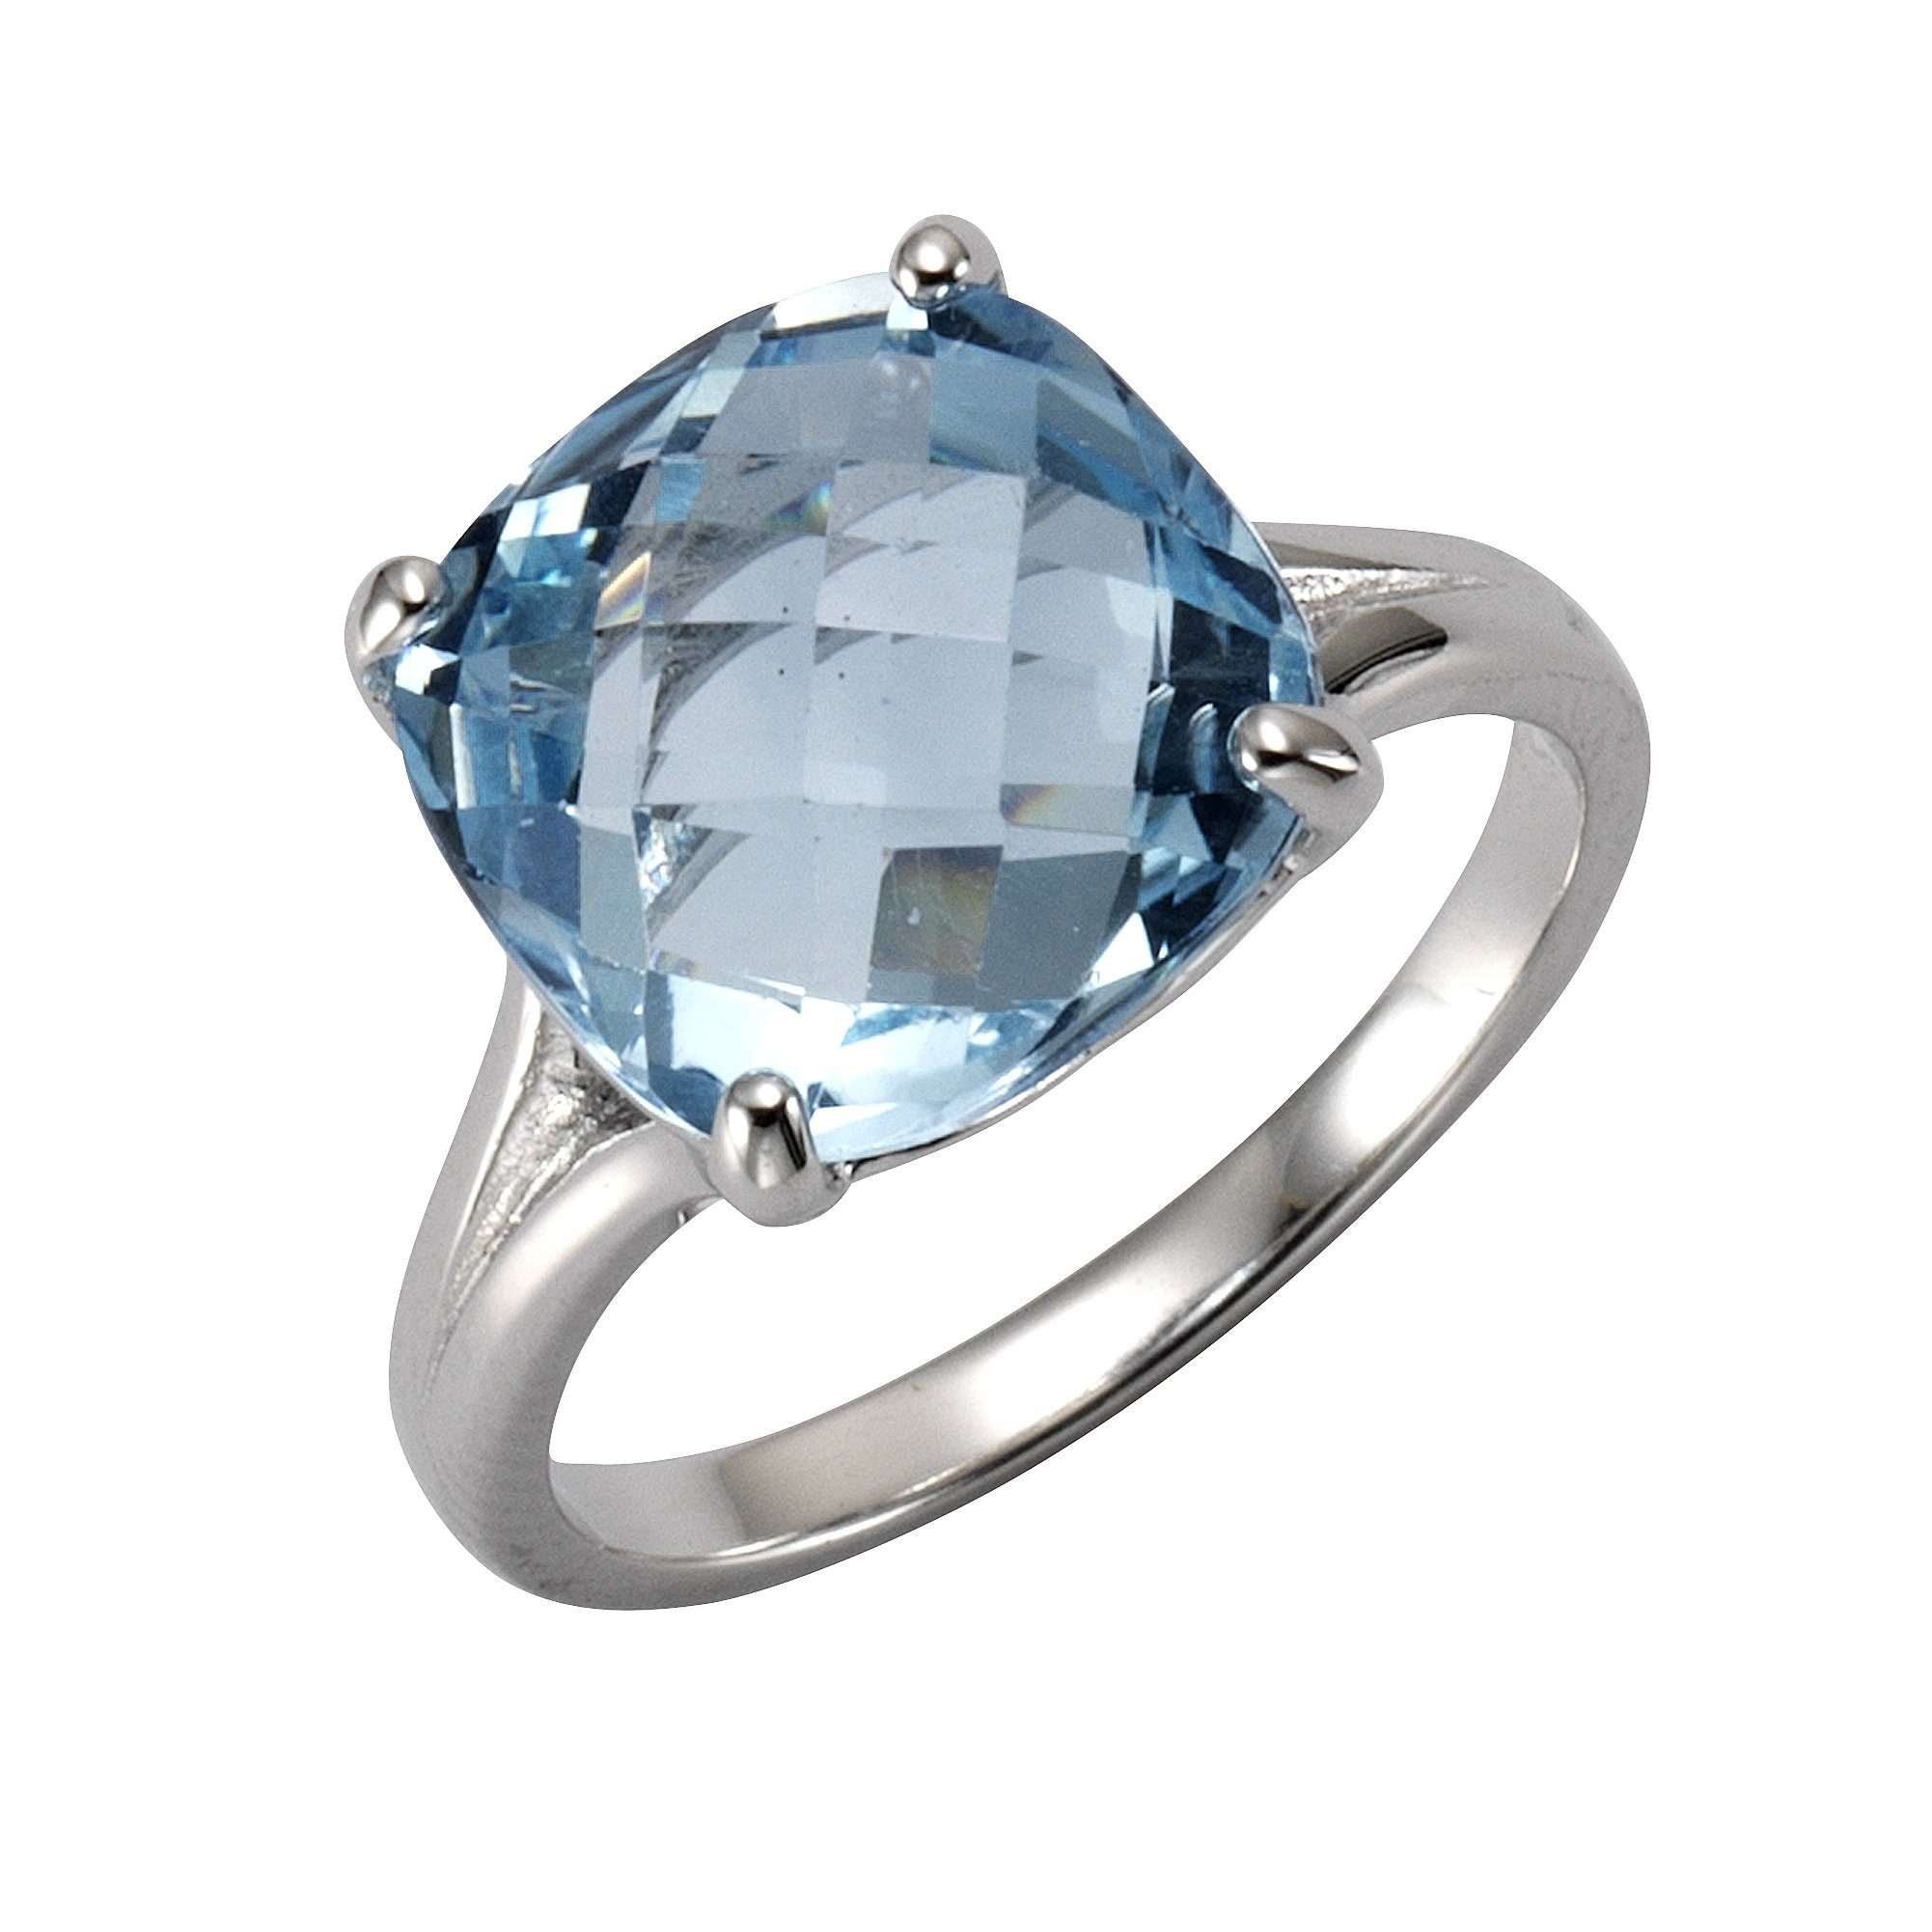 ZEEme Jewelry Damen Ring 925 Sterling Silber rhodiniert Mondstein weiß 16x12mm